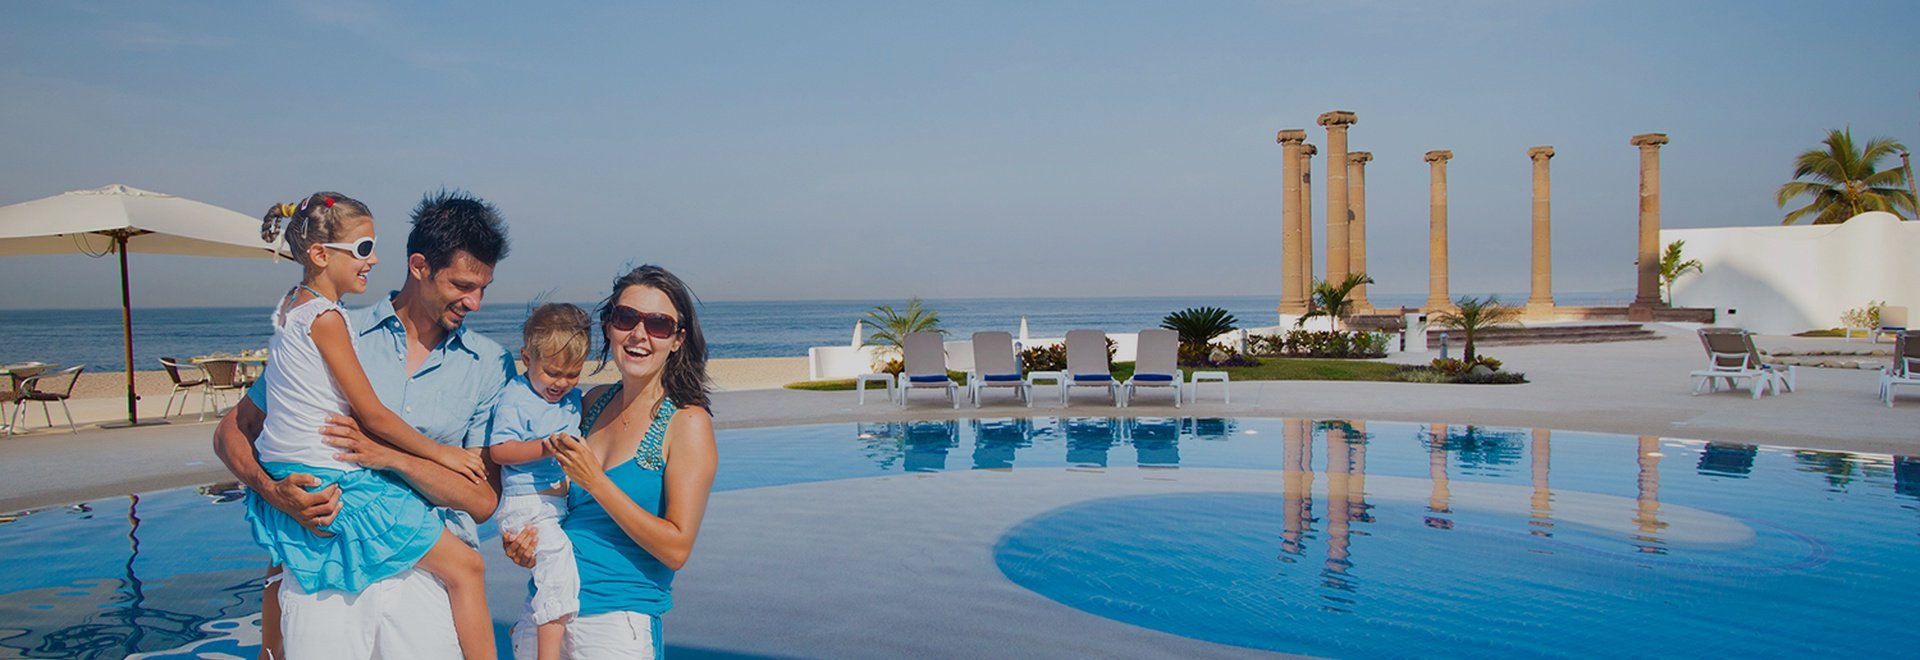 Hotel Krystal Puerto Vallarta - ¡Disfruta de las mejores puestas de Sol en Vallarta!